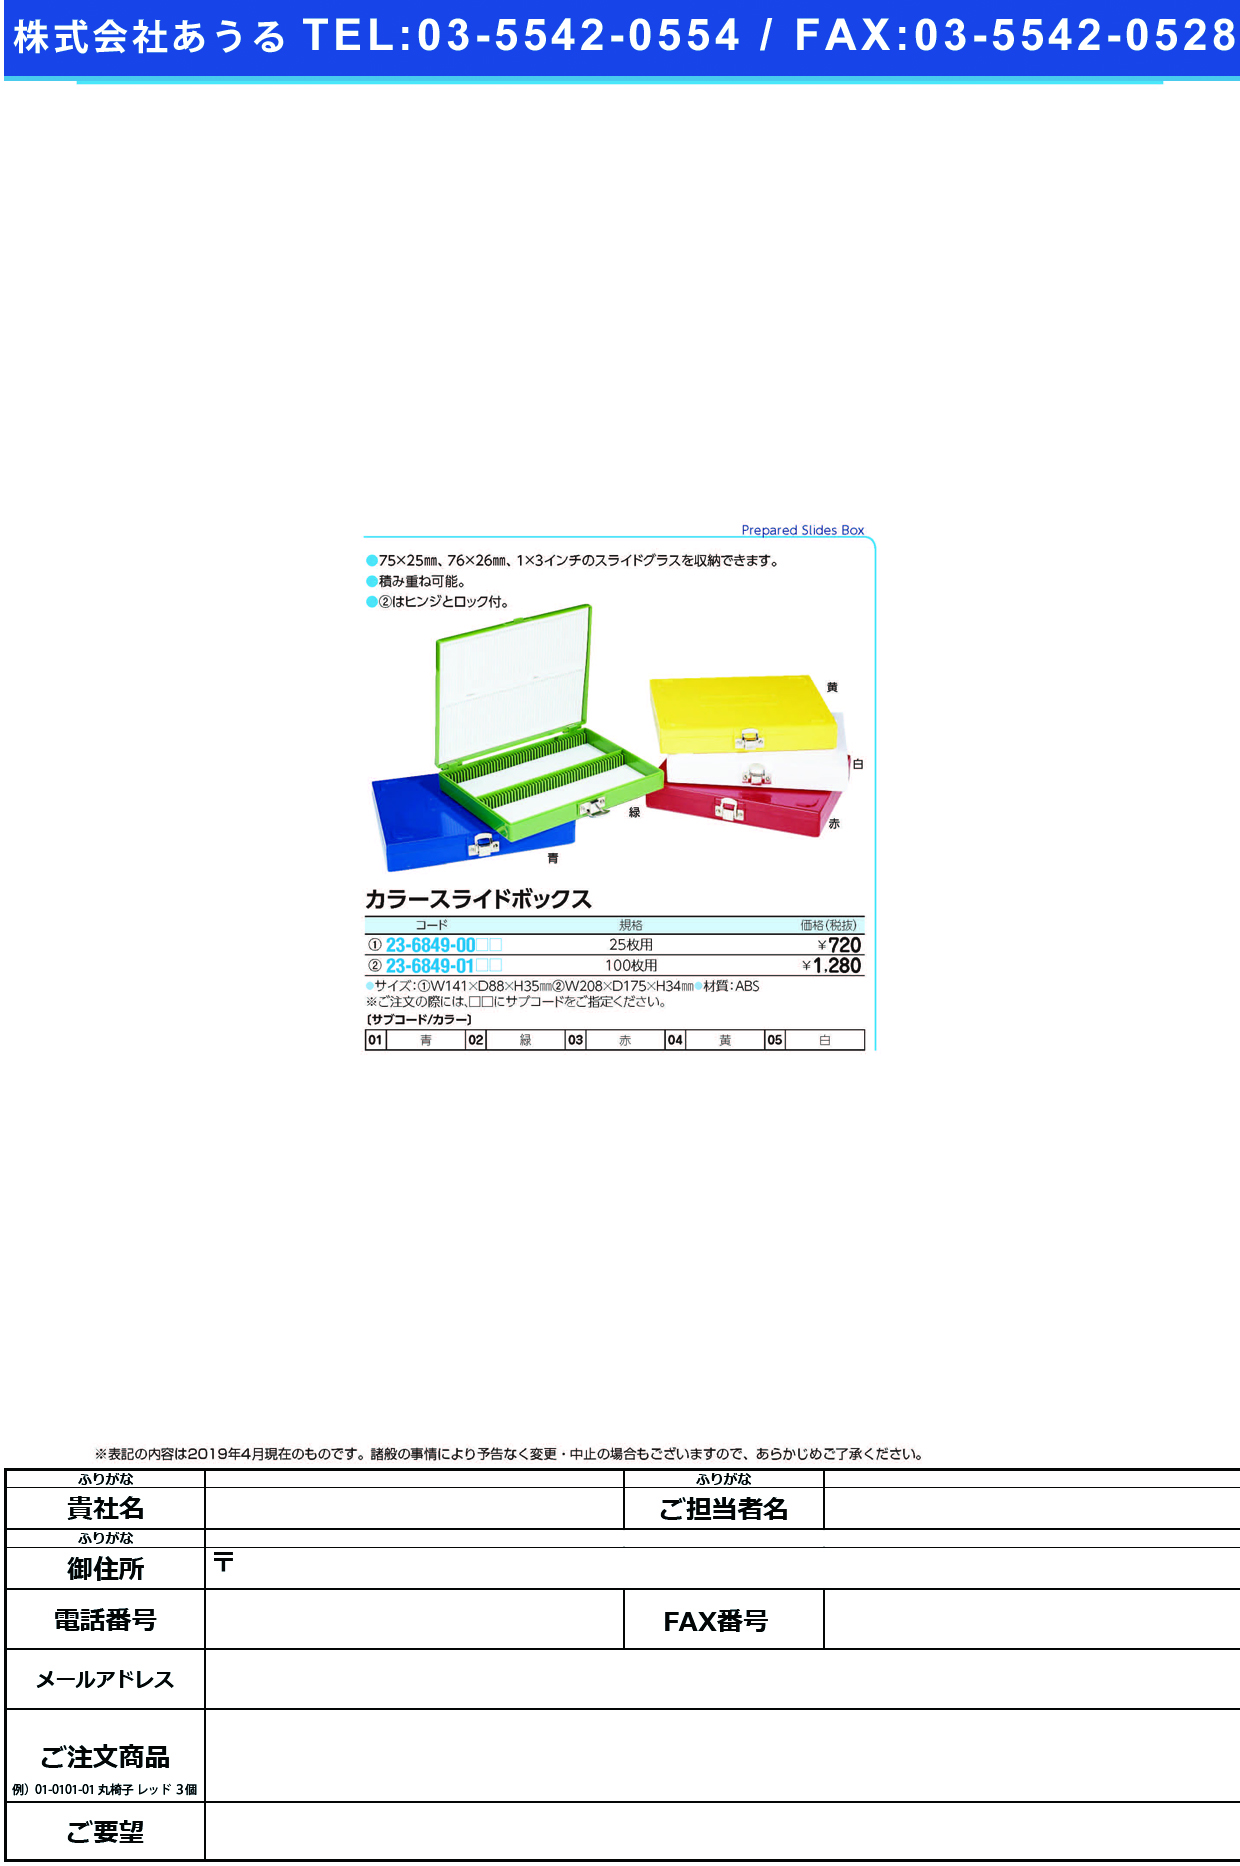 (23-6849-00)カラースライドボックス 25ﾏｲﾖｳ ｶﾗｰｽﾗｲﾄﾞﾎﾞｯｸｽ 緑【1個単位】【2019年カタログ商品】